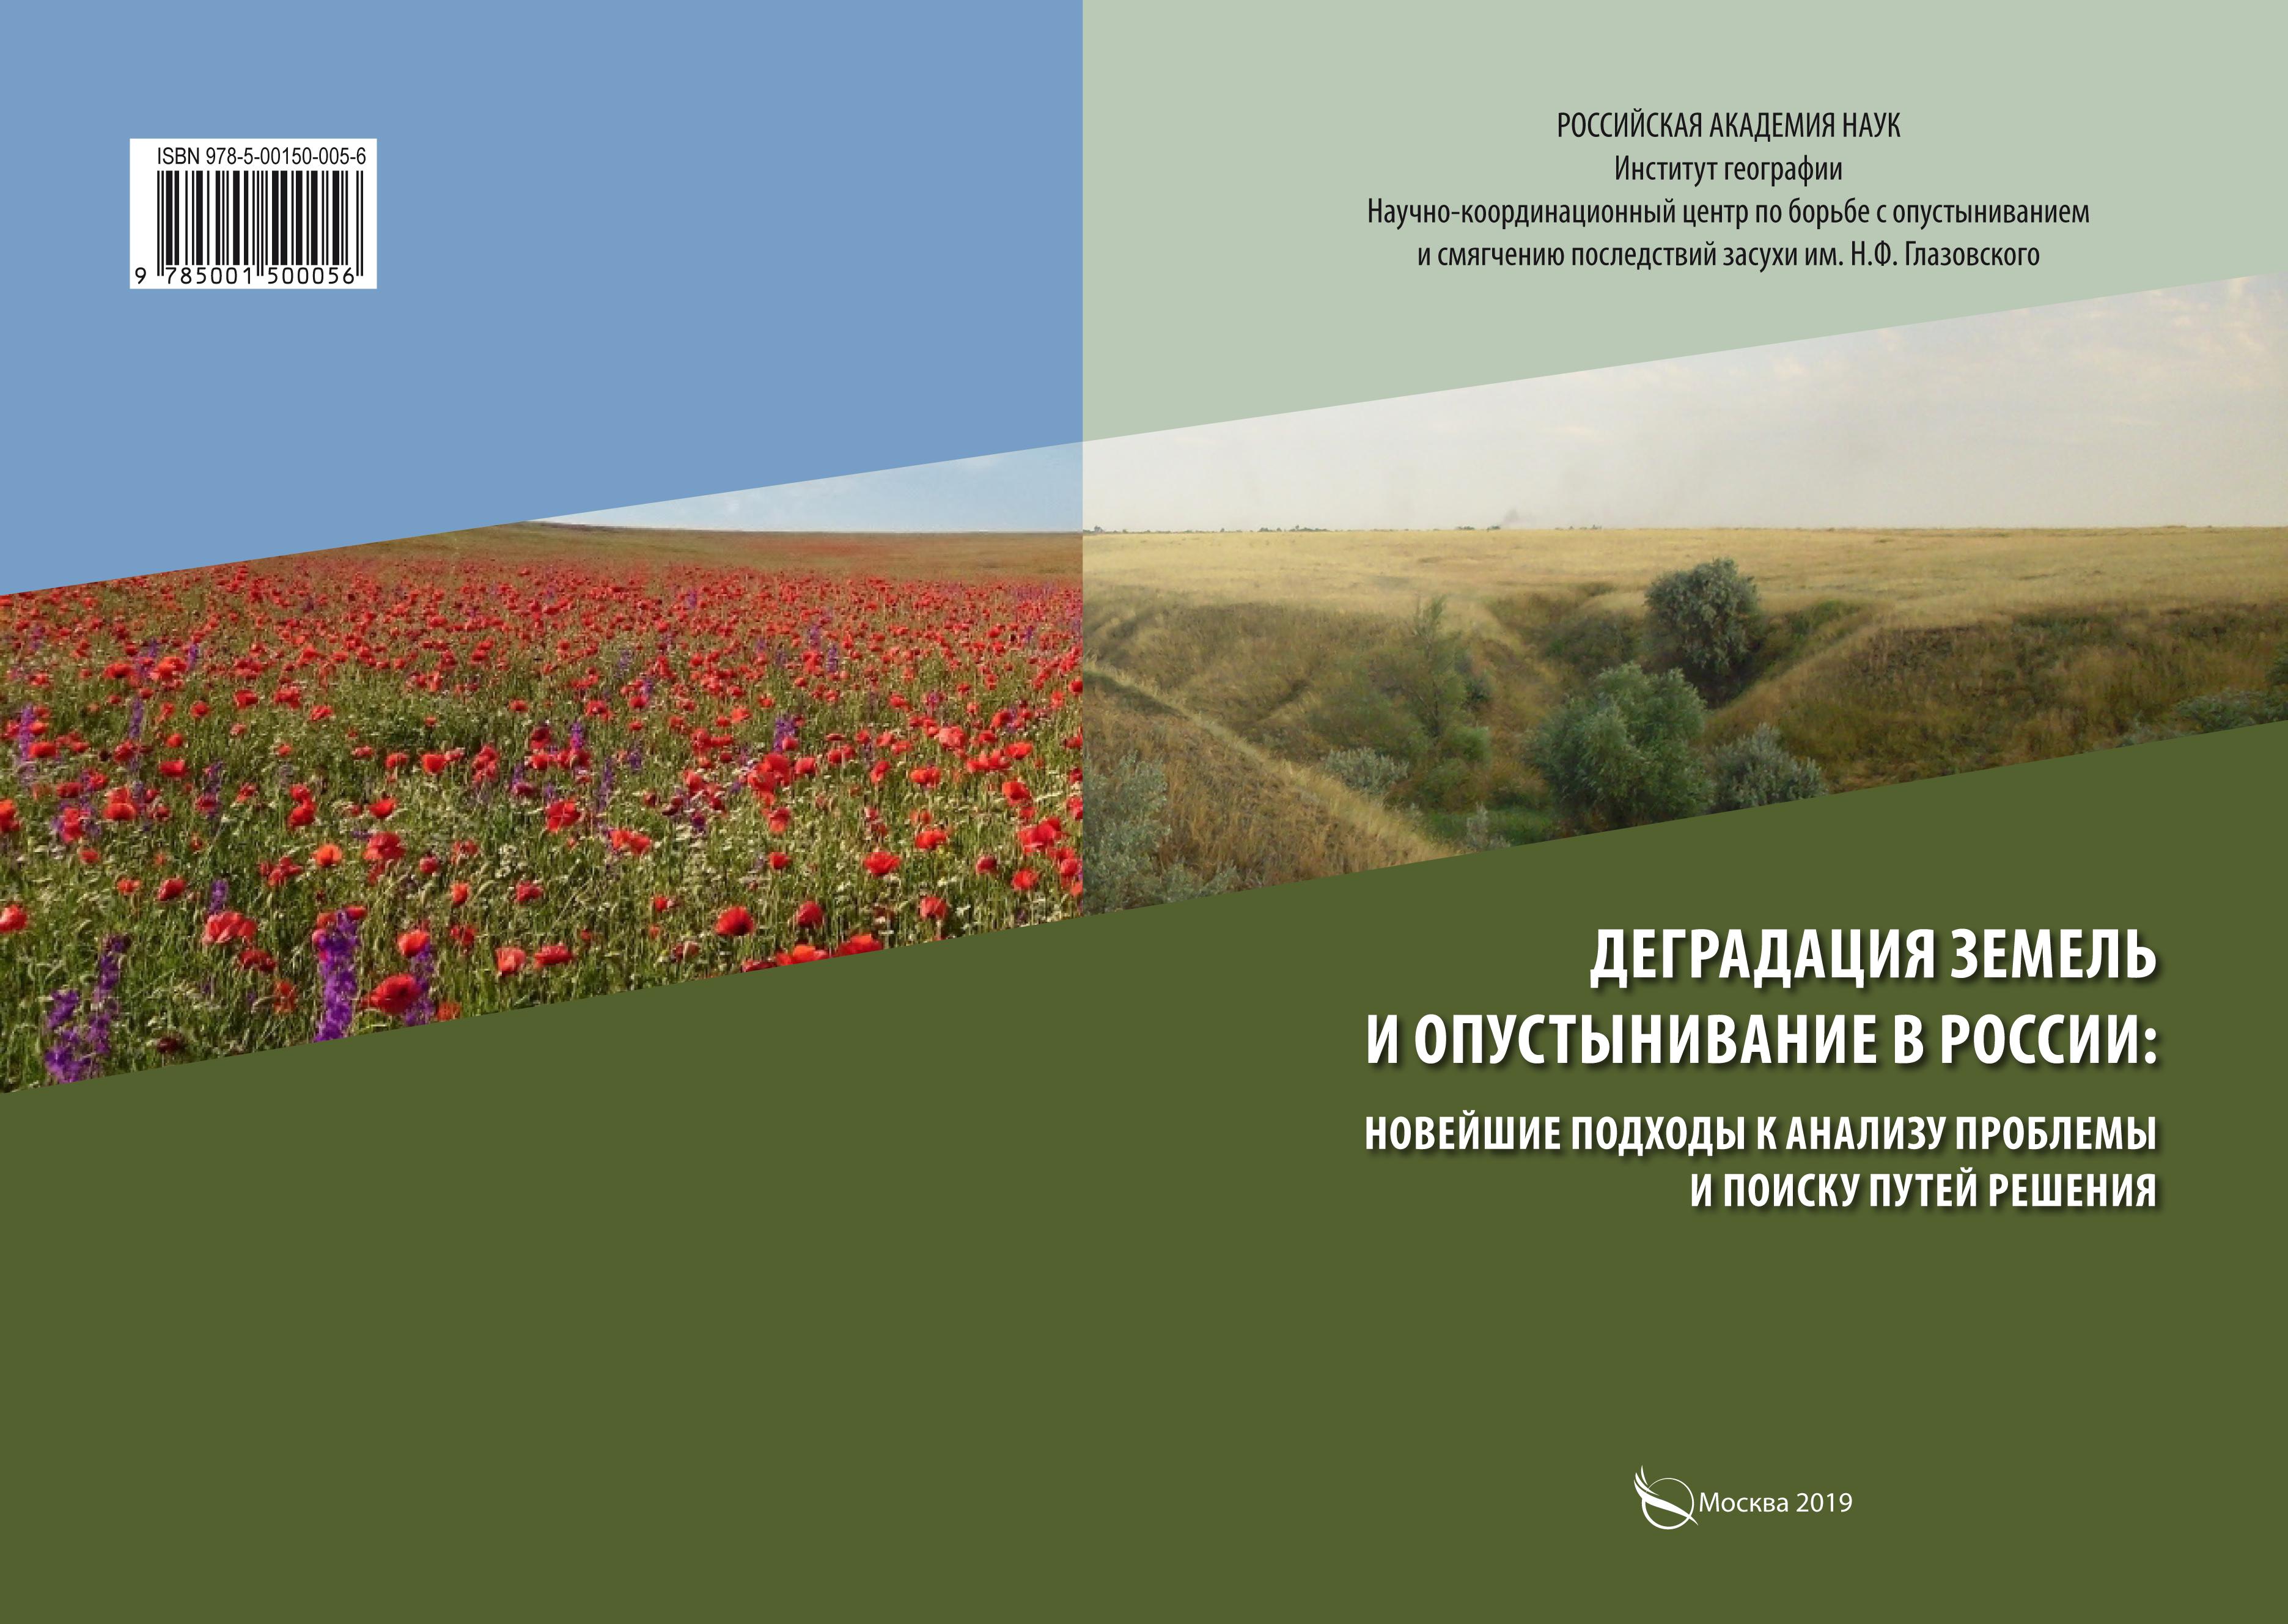 Деградация земель и опустынивание в России: Новейшие подходы к анализу проблемы и поиску путей решения